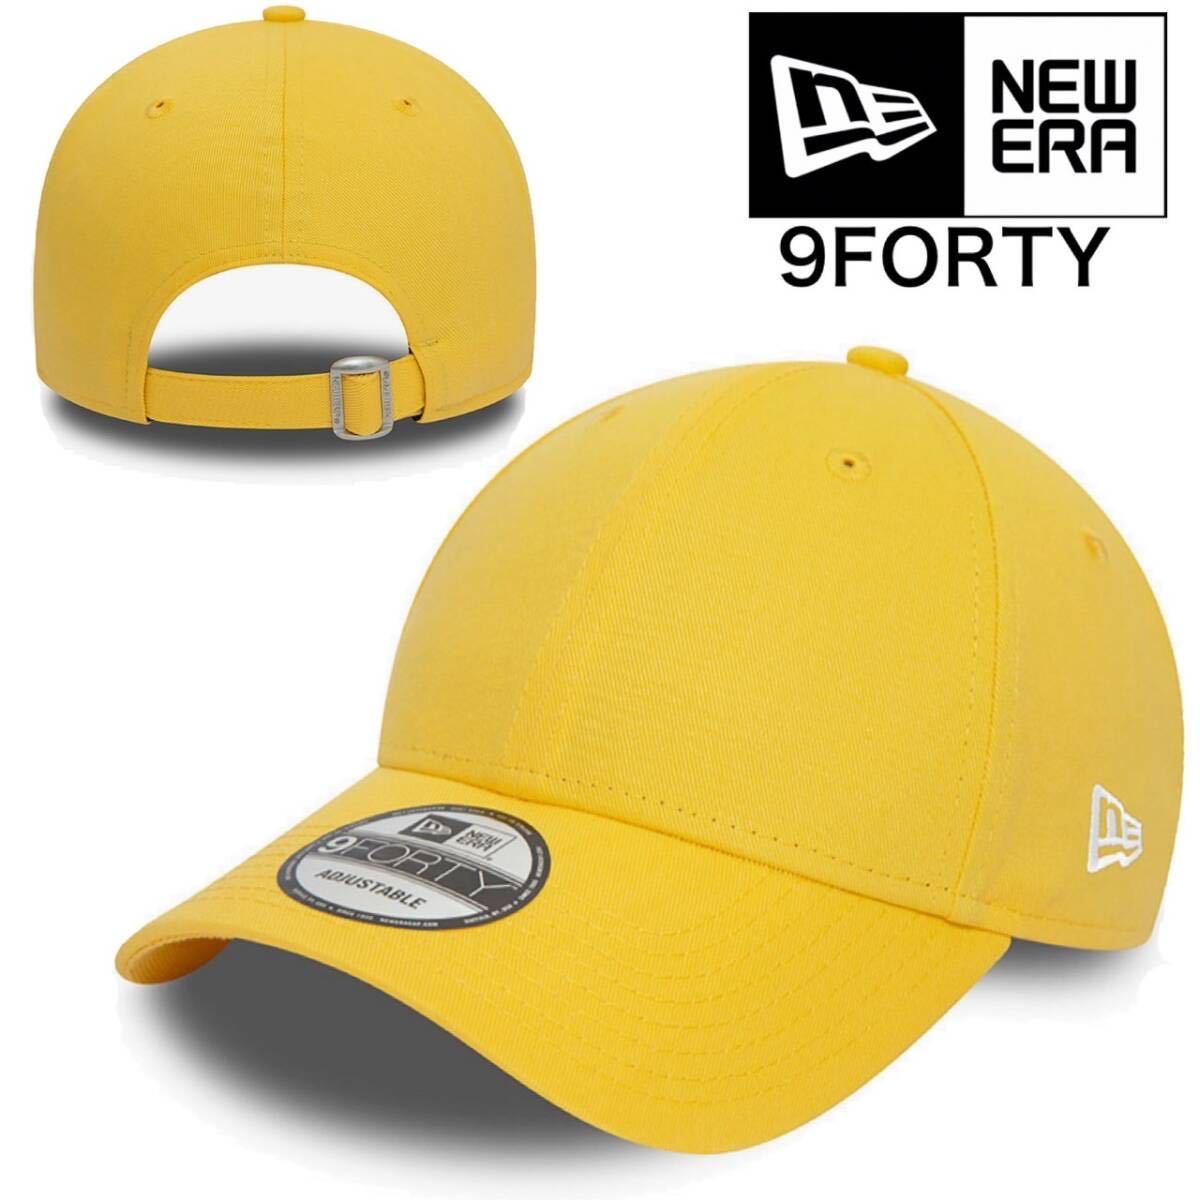 ニューエラ キャップ 帽子 9FORTY ナインフォーティ 刺ロゴ サイドロゴ プレーン イエロー ユニセックス NEWERA 9FORTY PLAIN CAP 新品